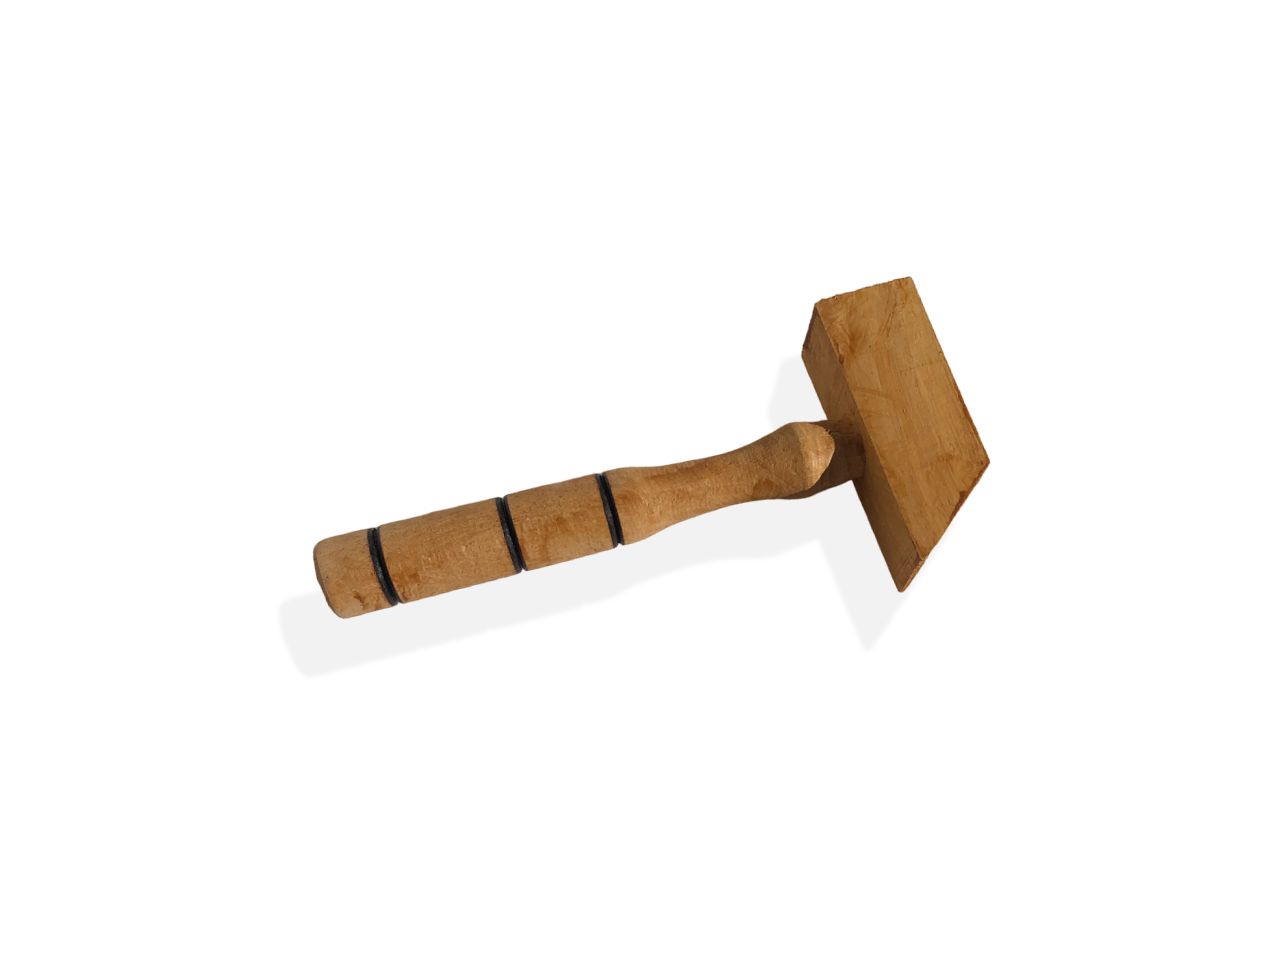 Gadget martello intagliato in legno.